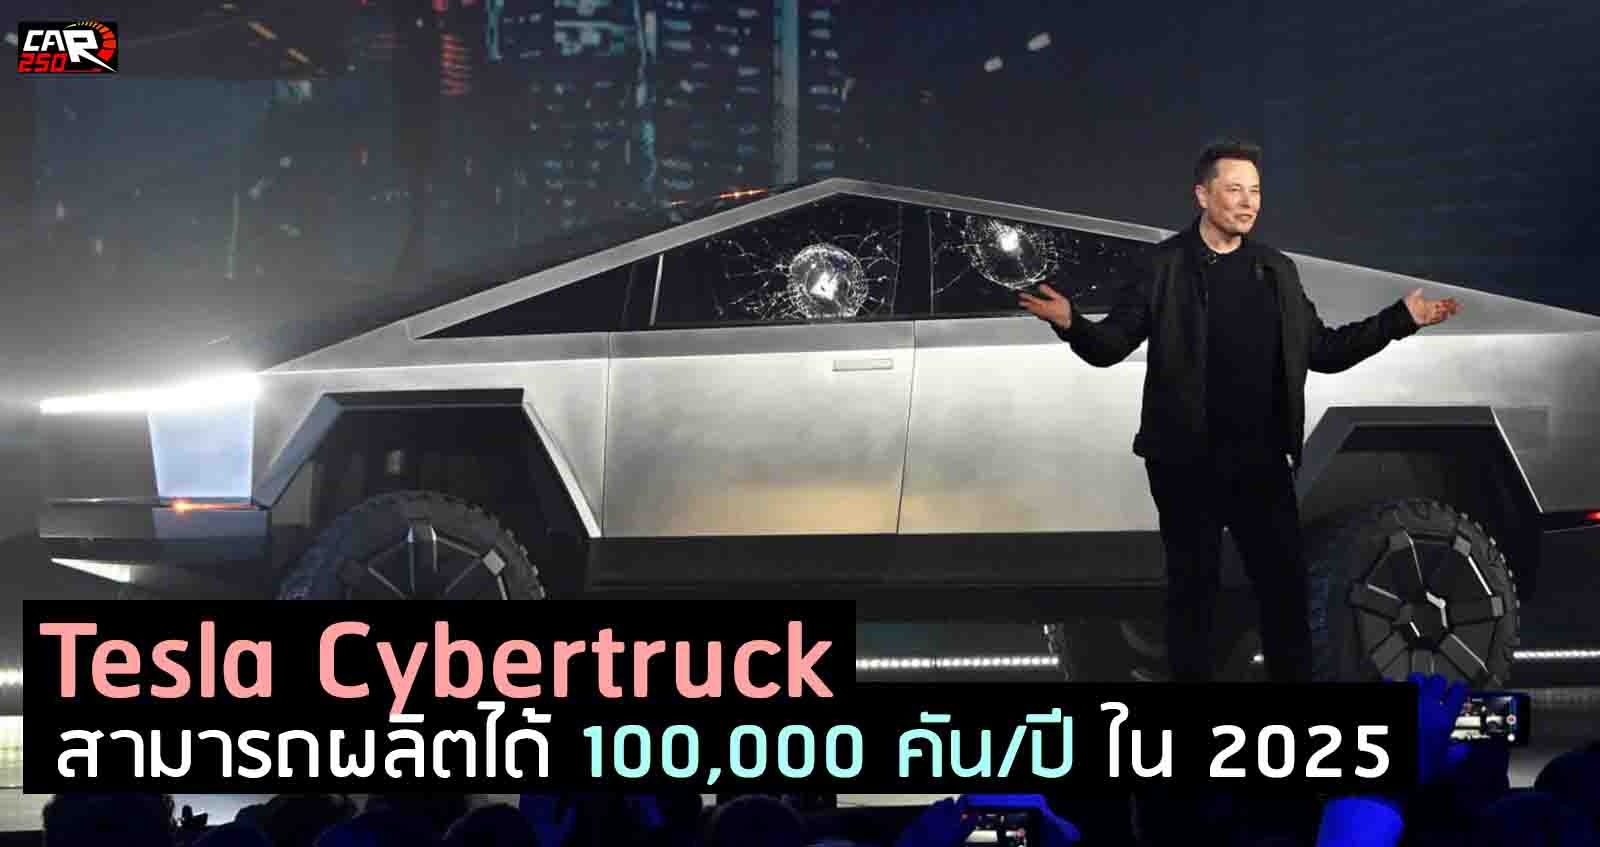 Tesla Cybertruck กระบะไฟฟ้า สามารถผลิตได้ 100,000 คันต่อปี ภายใน 2025